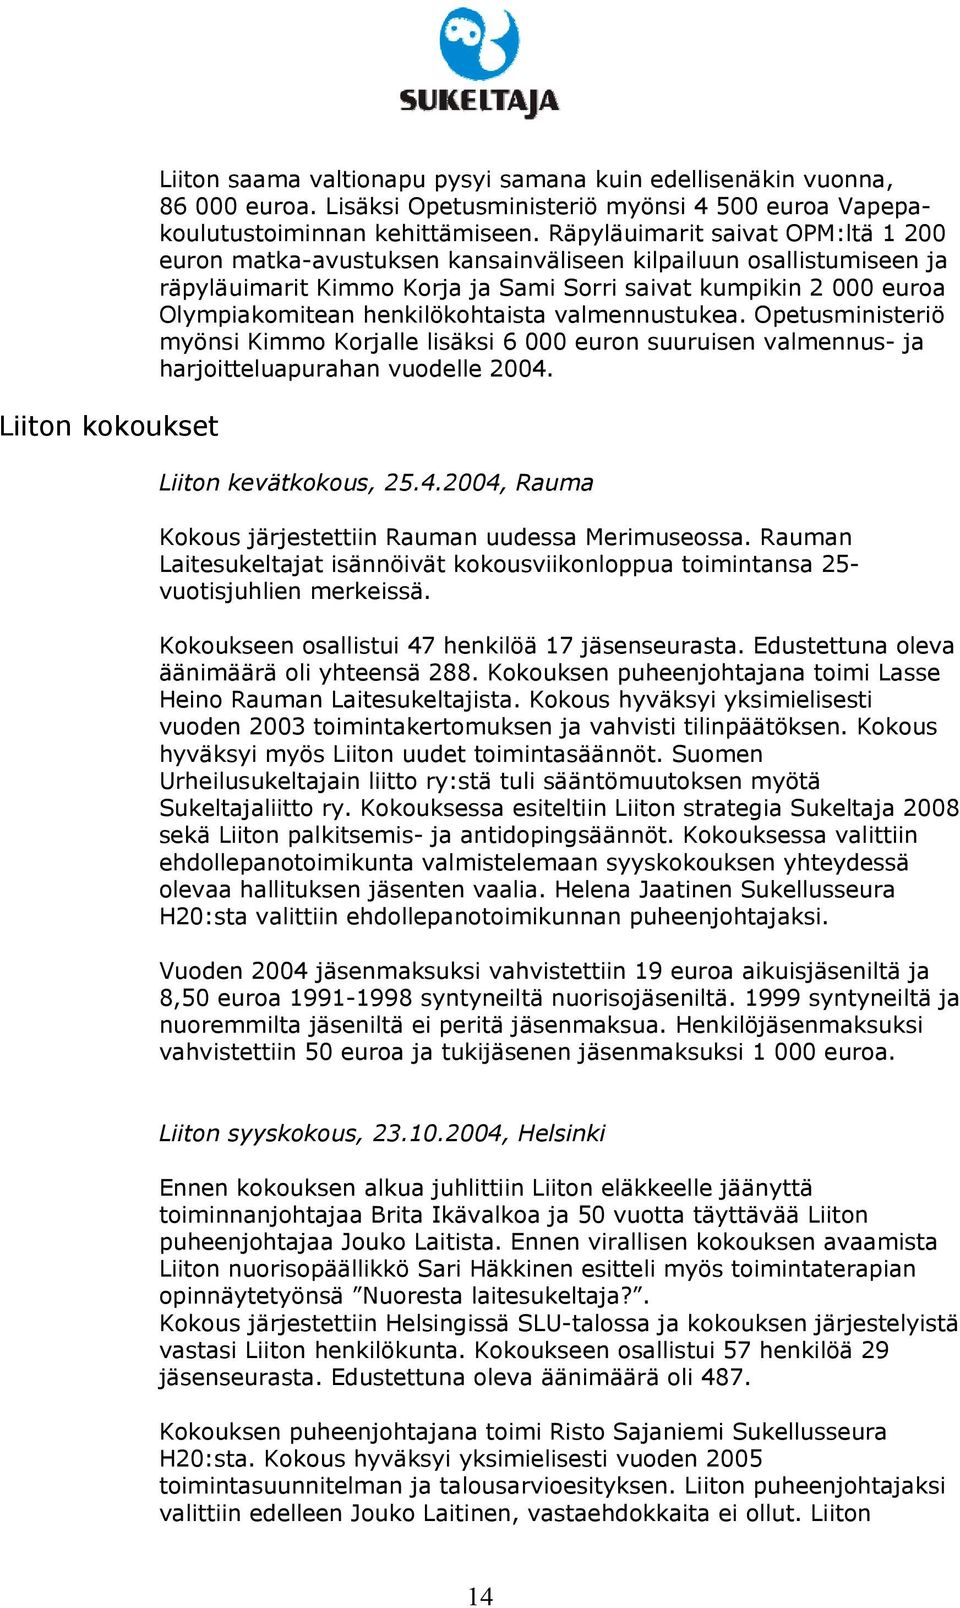 henkilökohtaista valmennustukea. Opetusministeriö myönsi Kimmo Korjalle lisäksi 6 000 euron suuruisen valmennus- ja harjoitteluapurahan vuodelle 2004.